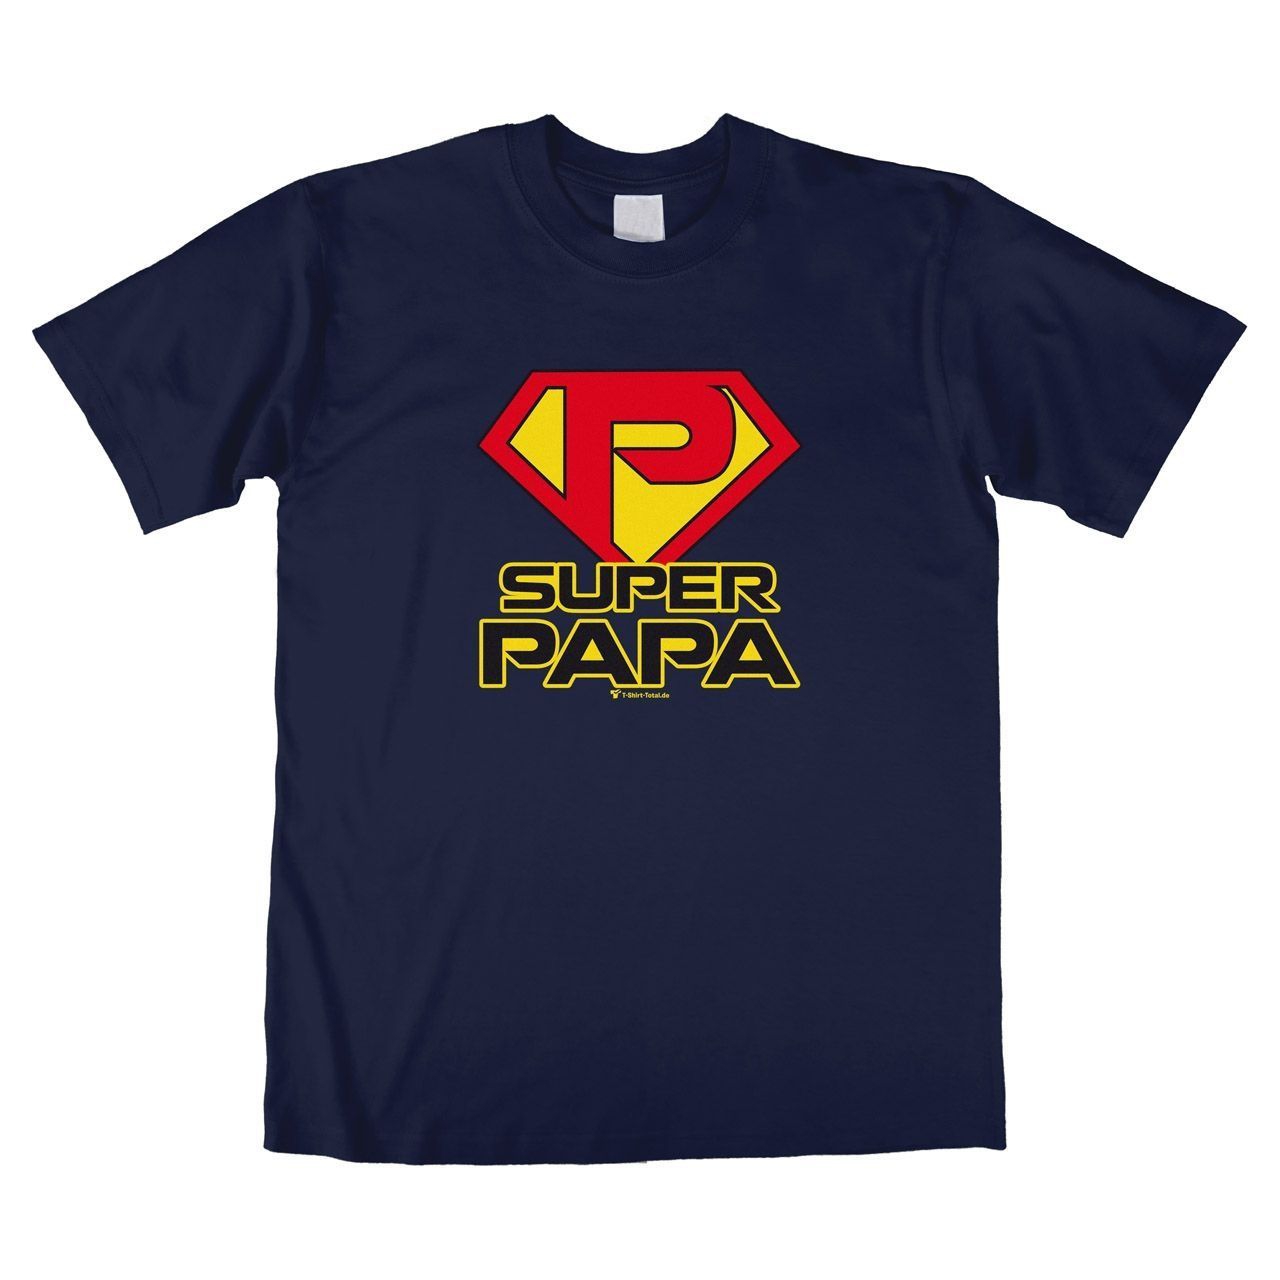 Super Papa Unisex T-Shirt navy Large